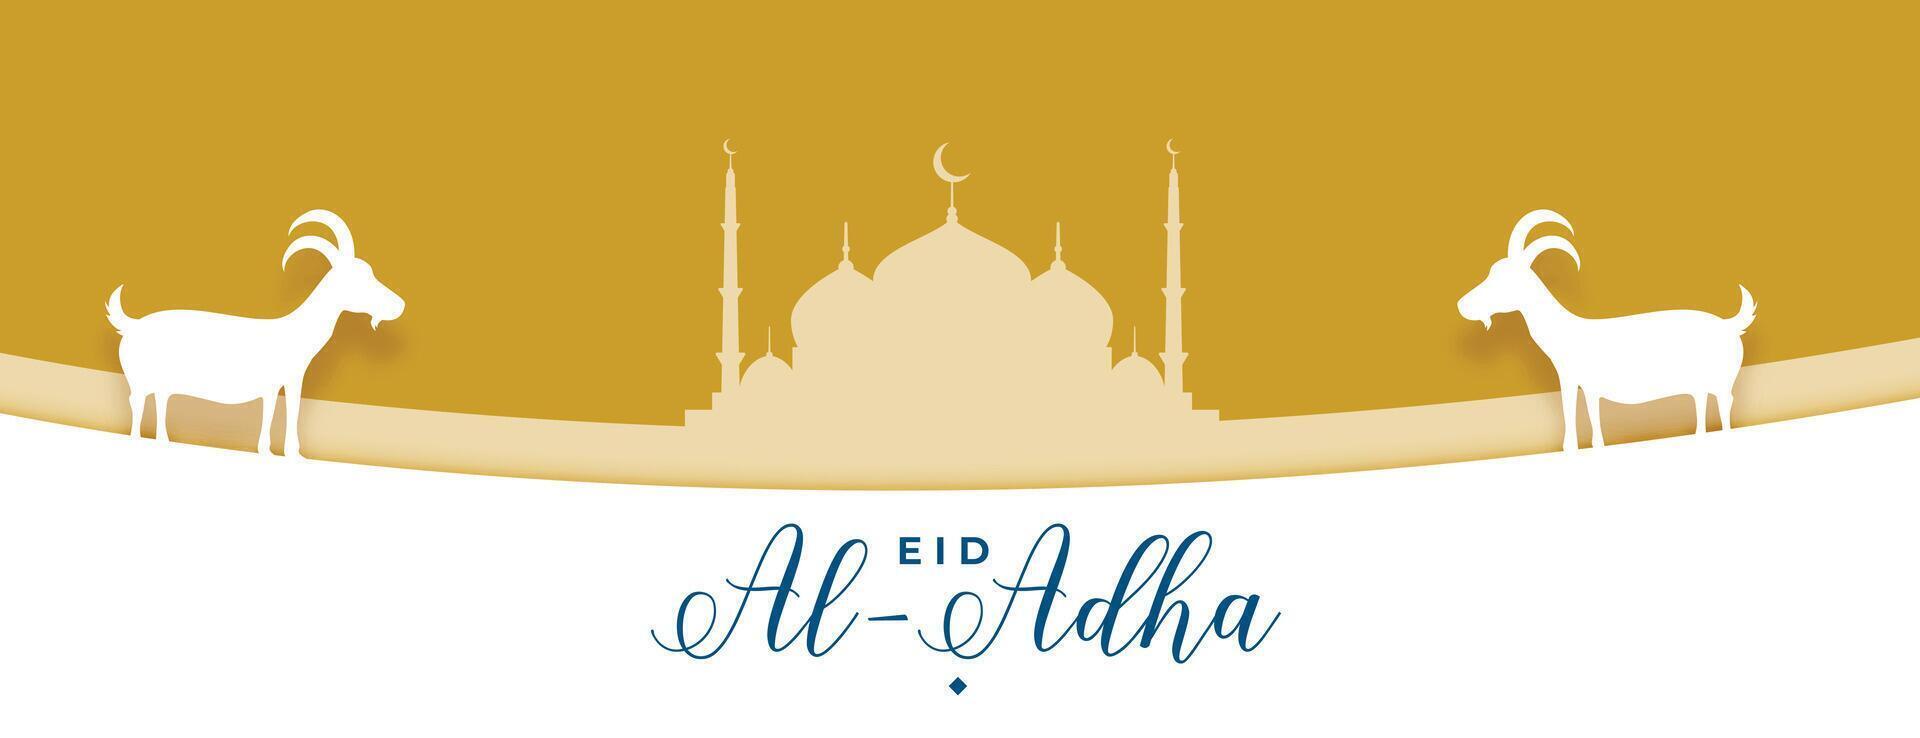 eid Alabama adha Mubarak con mezquita y cabra en Arábica diseño vector